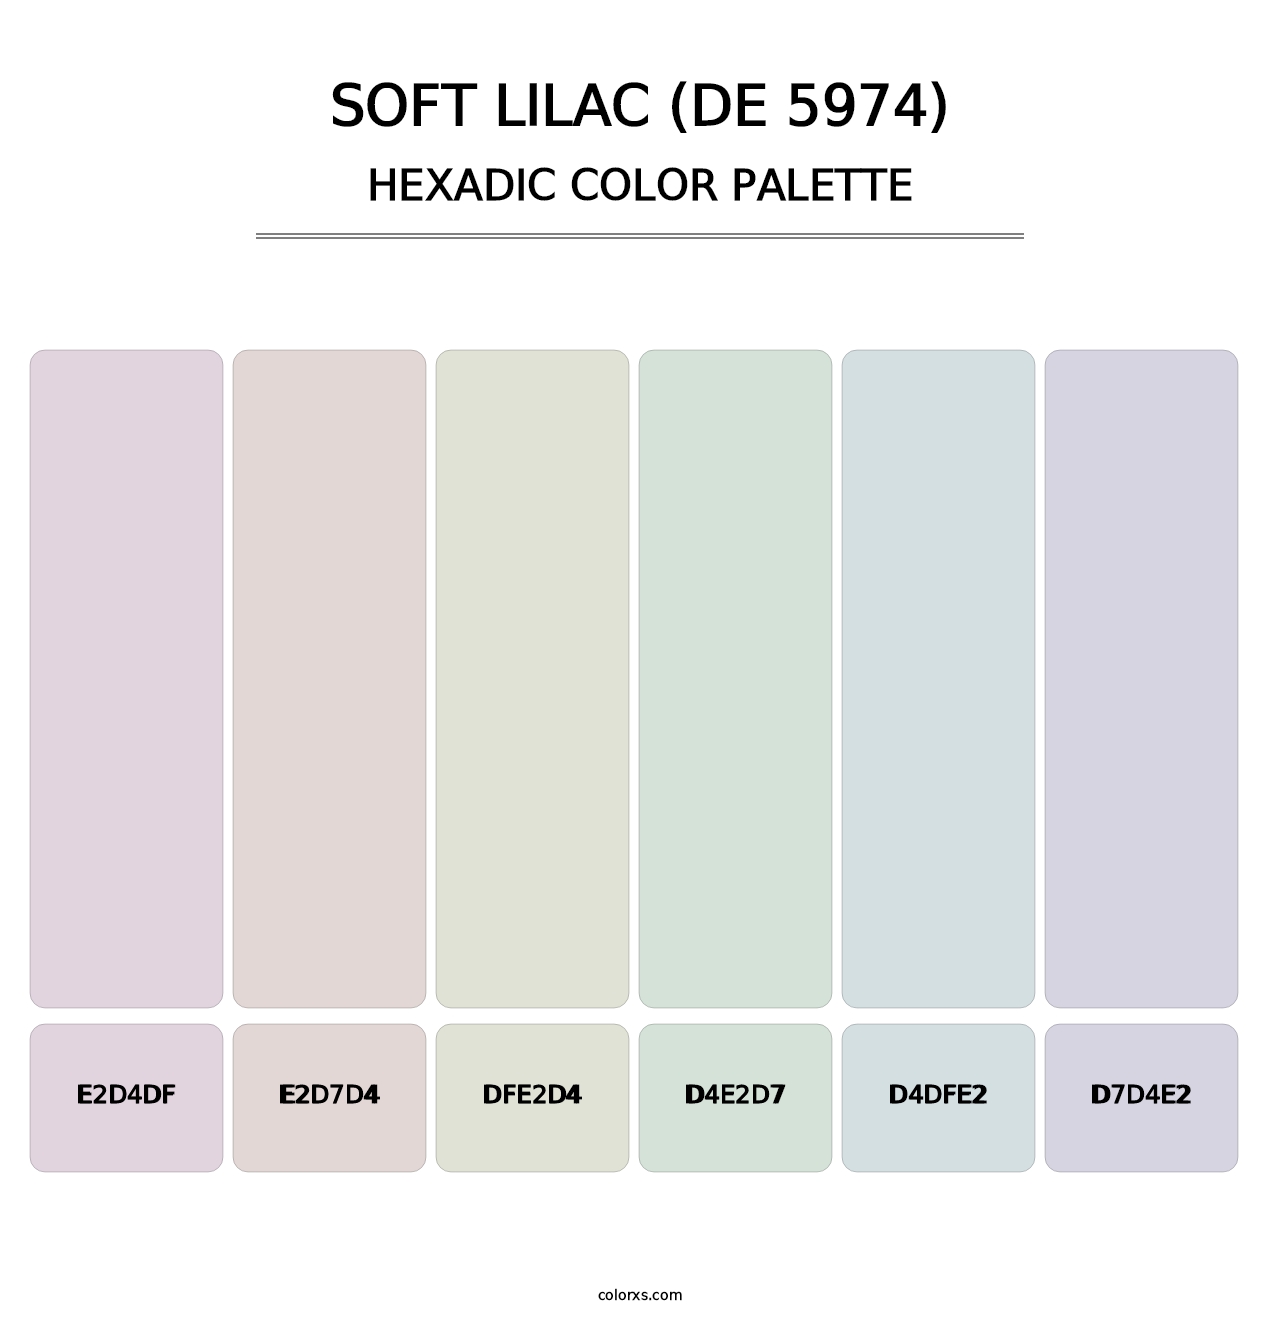 Soft Lilac (DE 5974) - Hexadic Color Palette